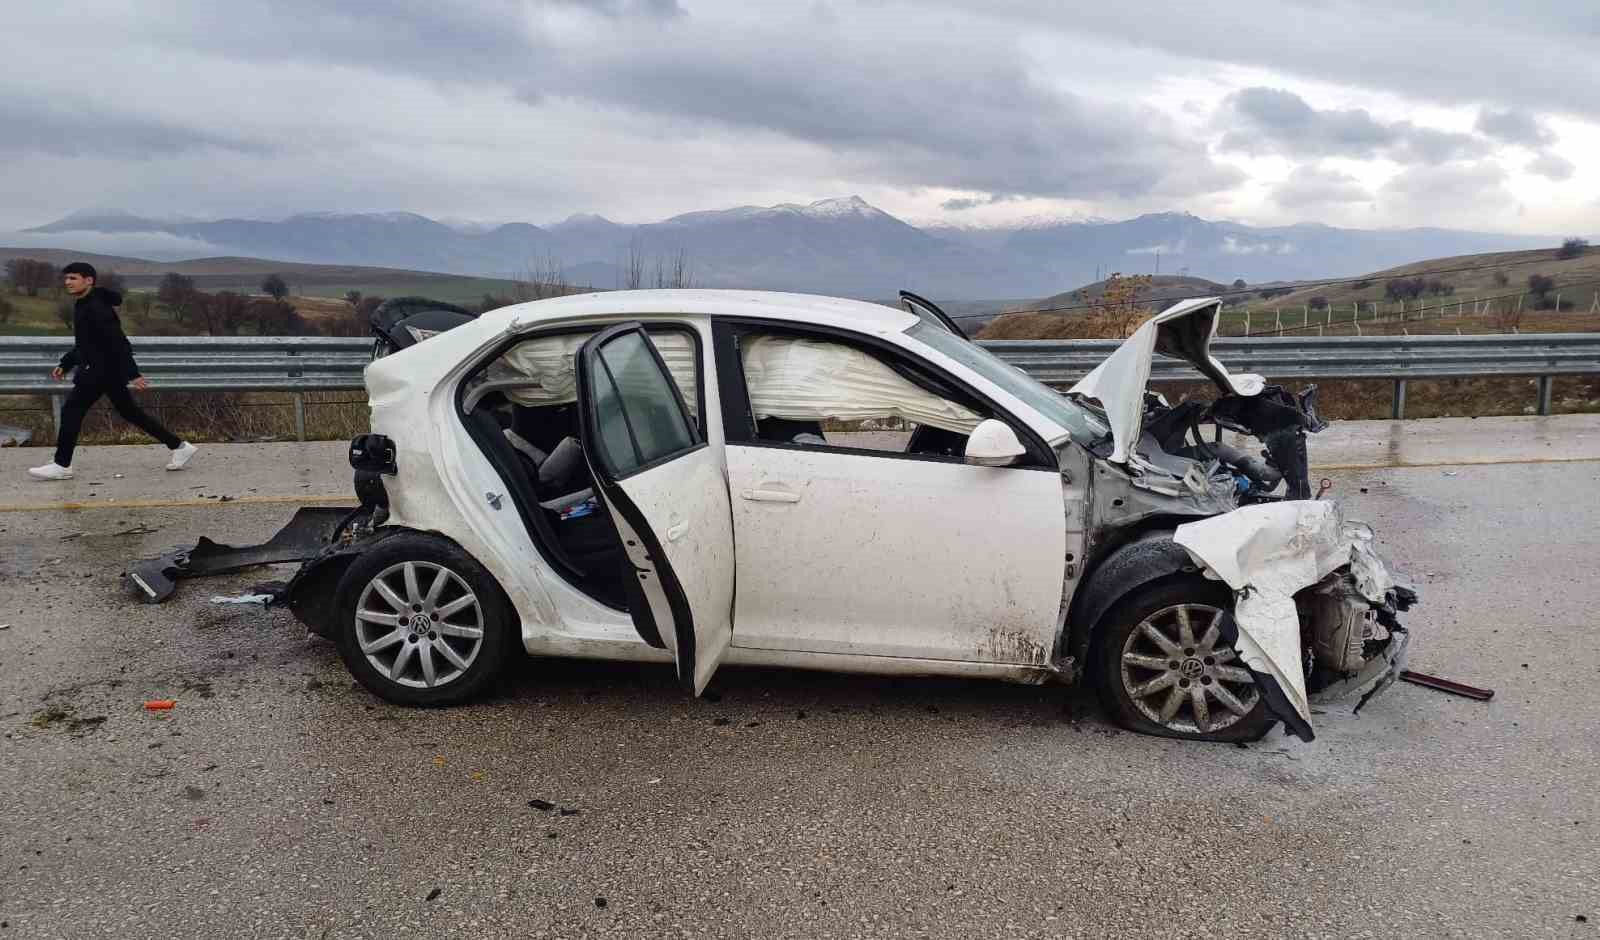 Elazığ’da meydana gelen trafik kazasında 2 araç birbirine çarptı ve 4 kişi yaralandı.